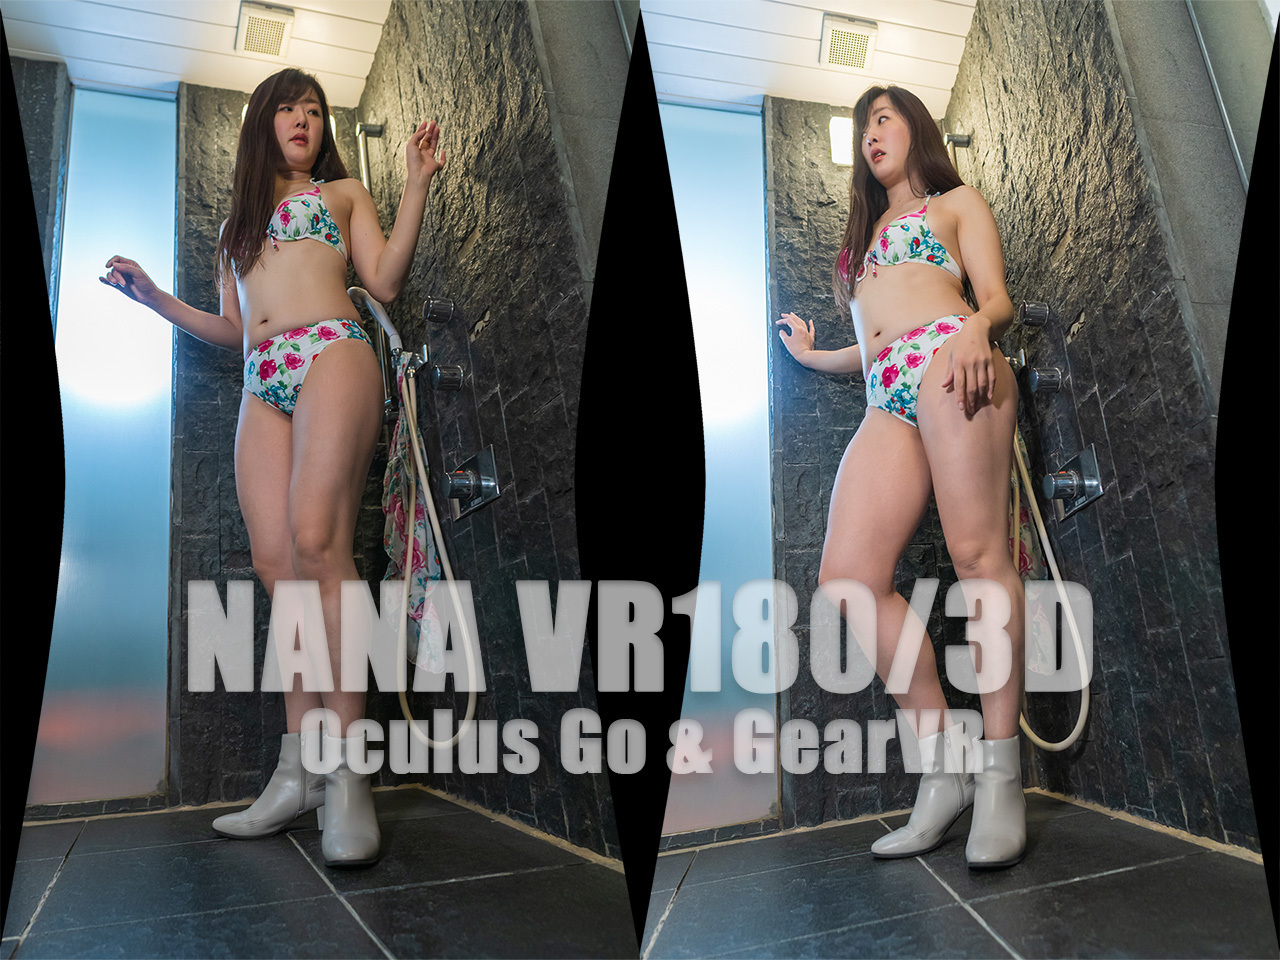 NANA VR180/3D